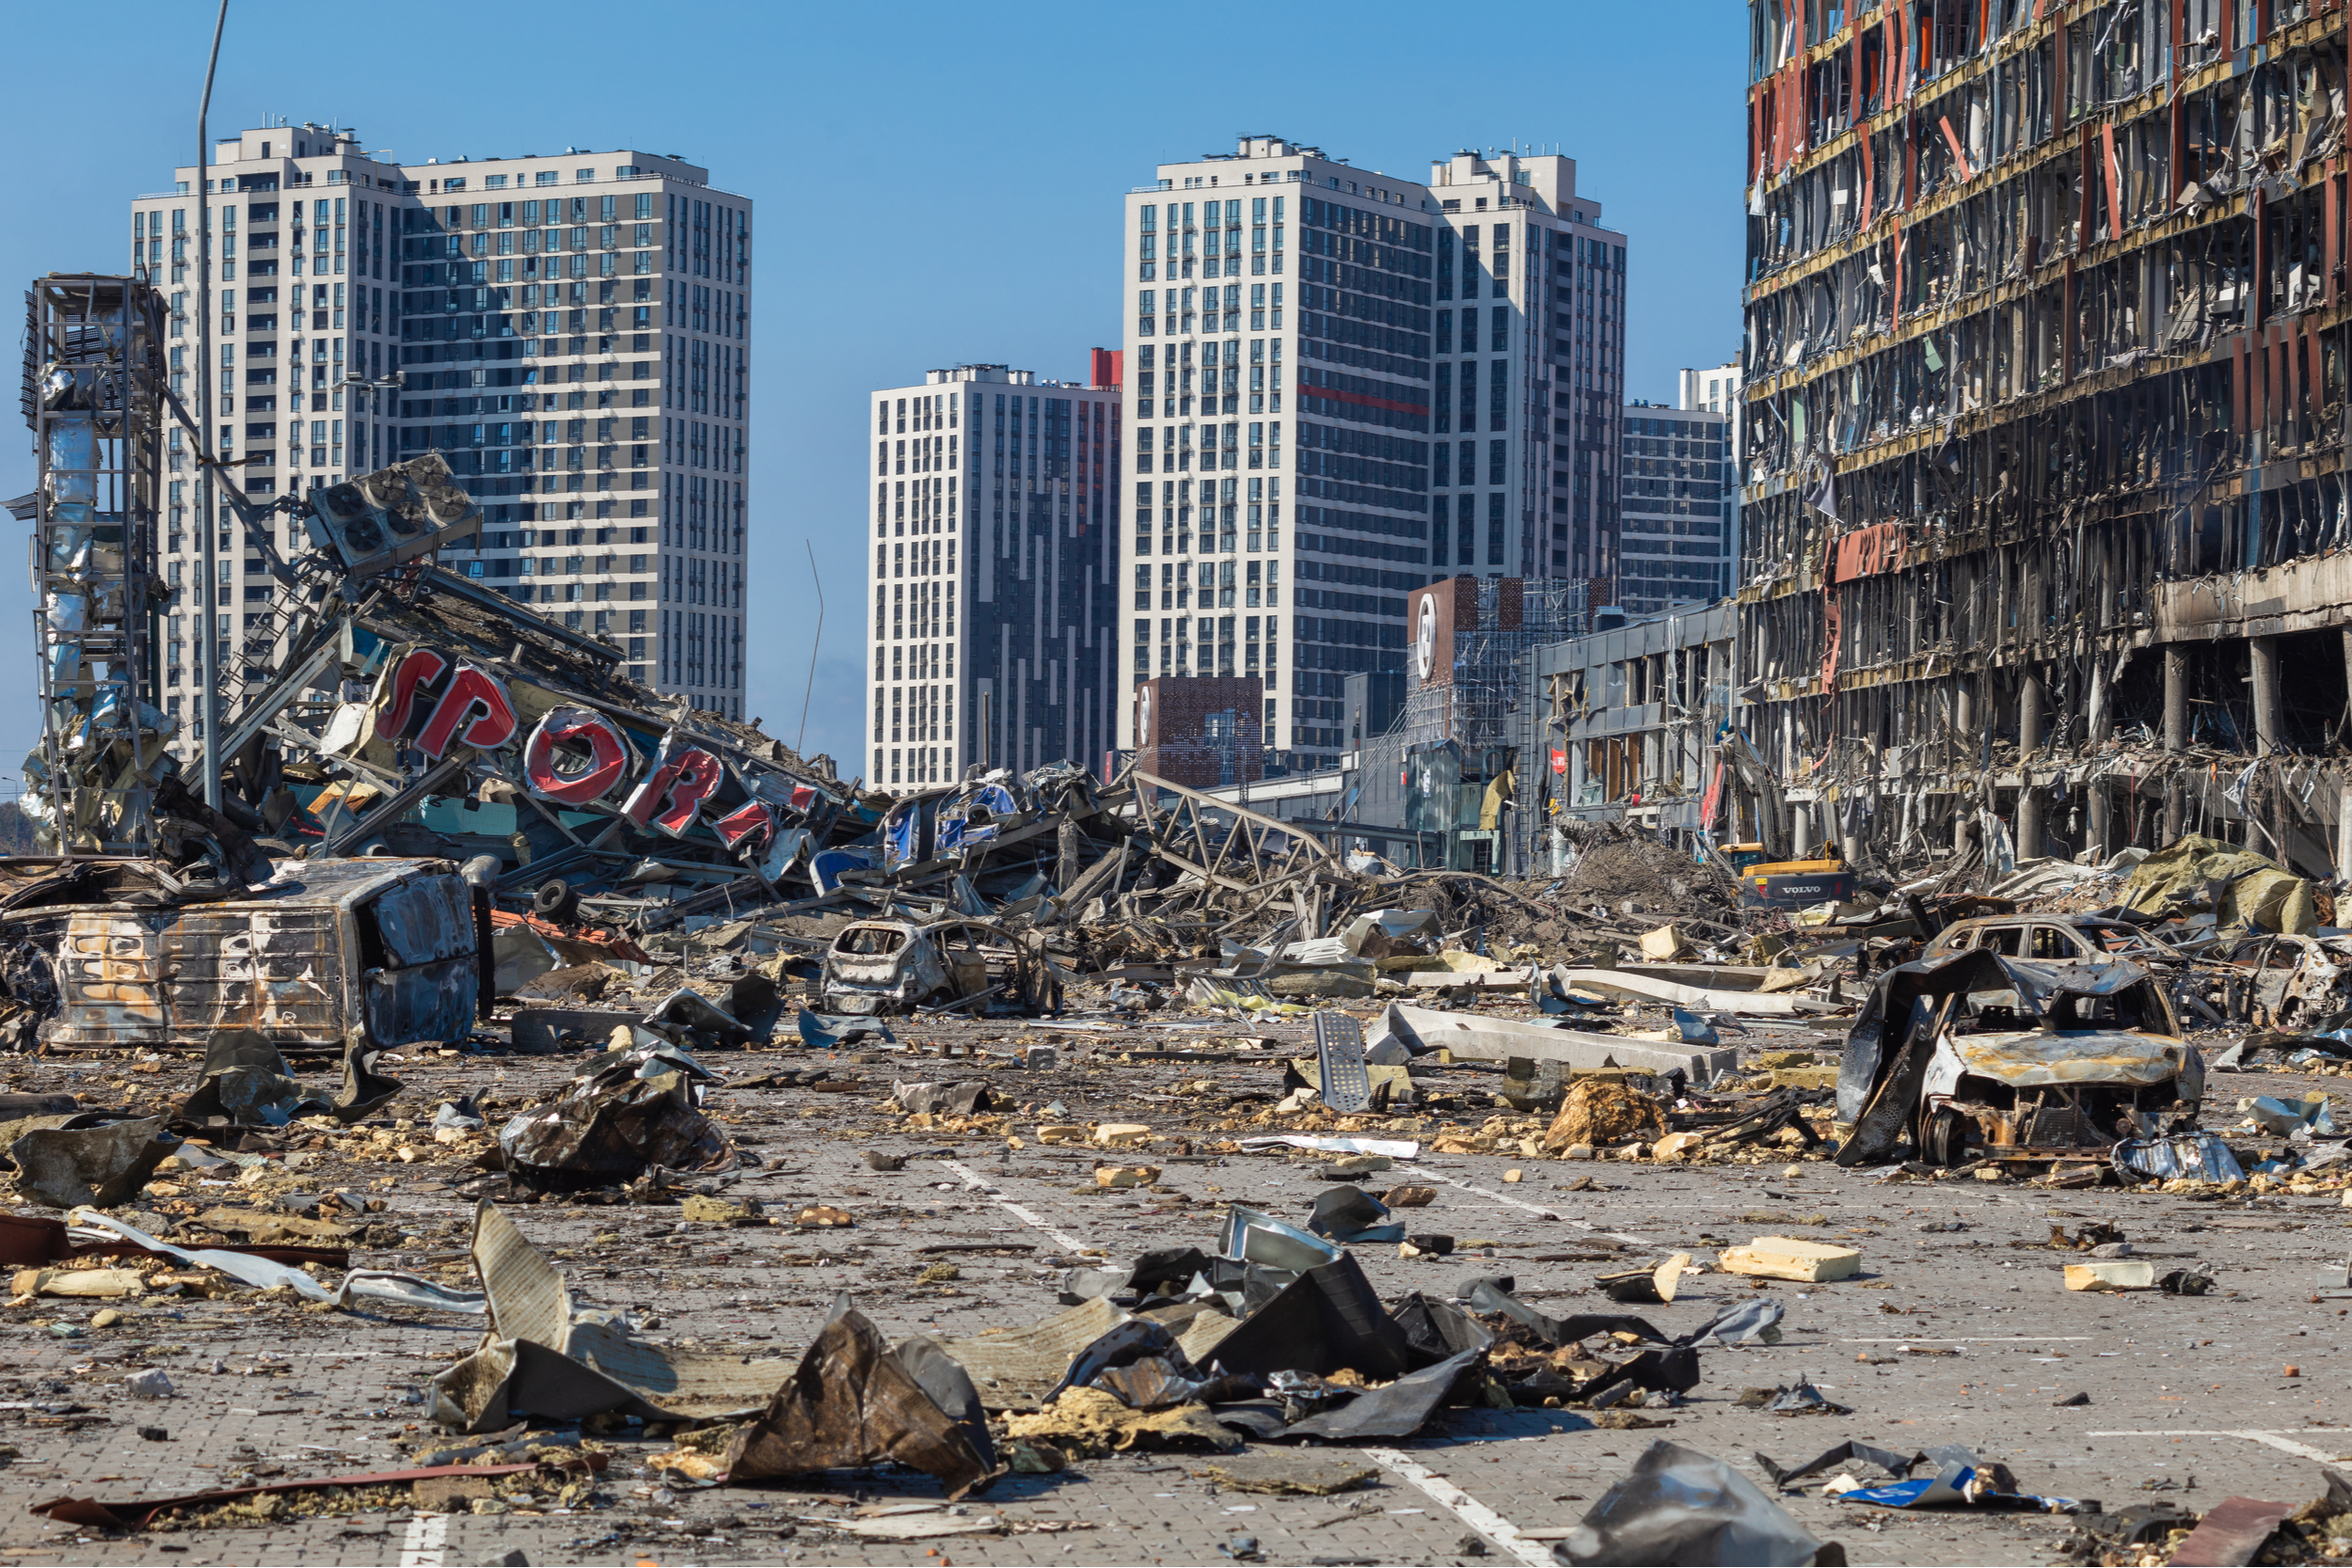 zniszczenia w Ukrainie spowodowane agresją Rosji, fot. Shutterstock